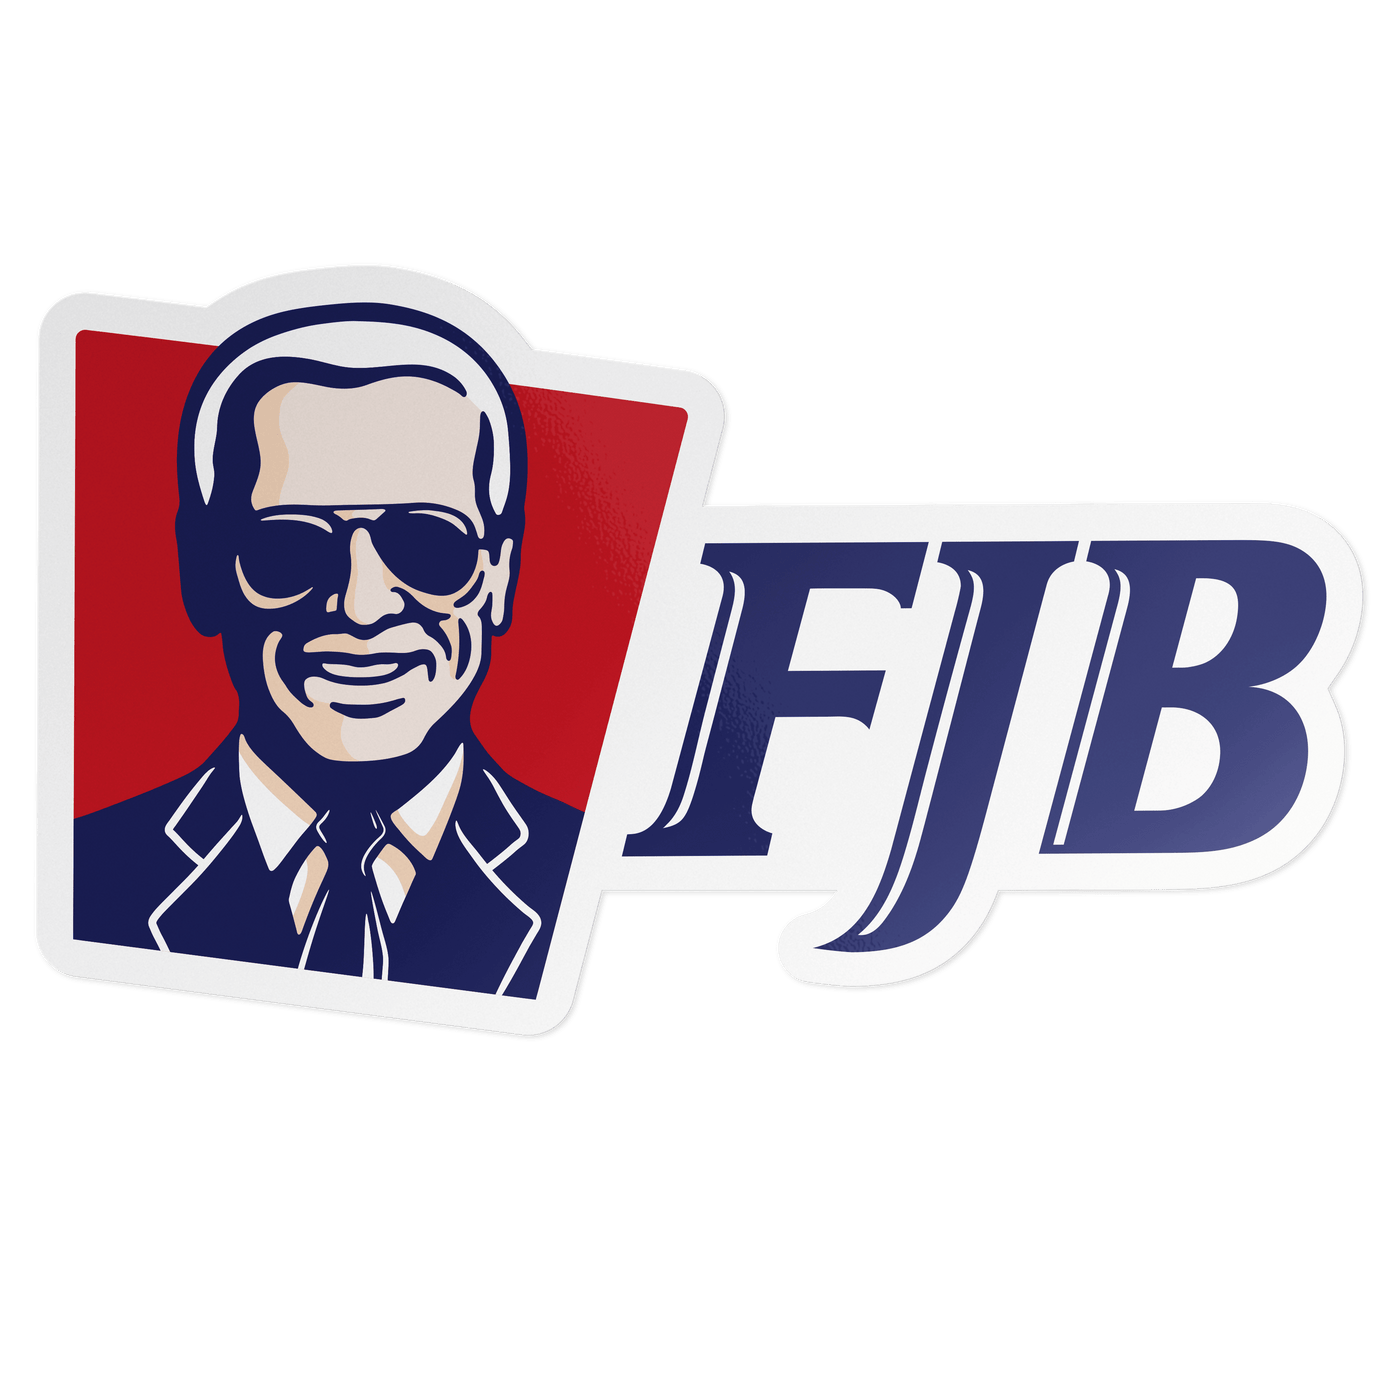 FJB Sticker